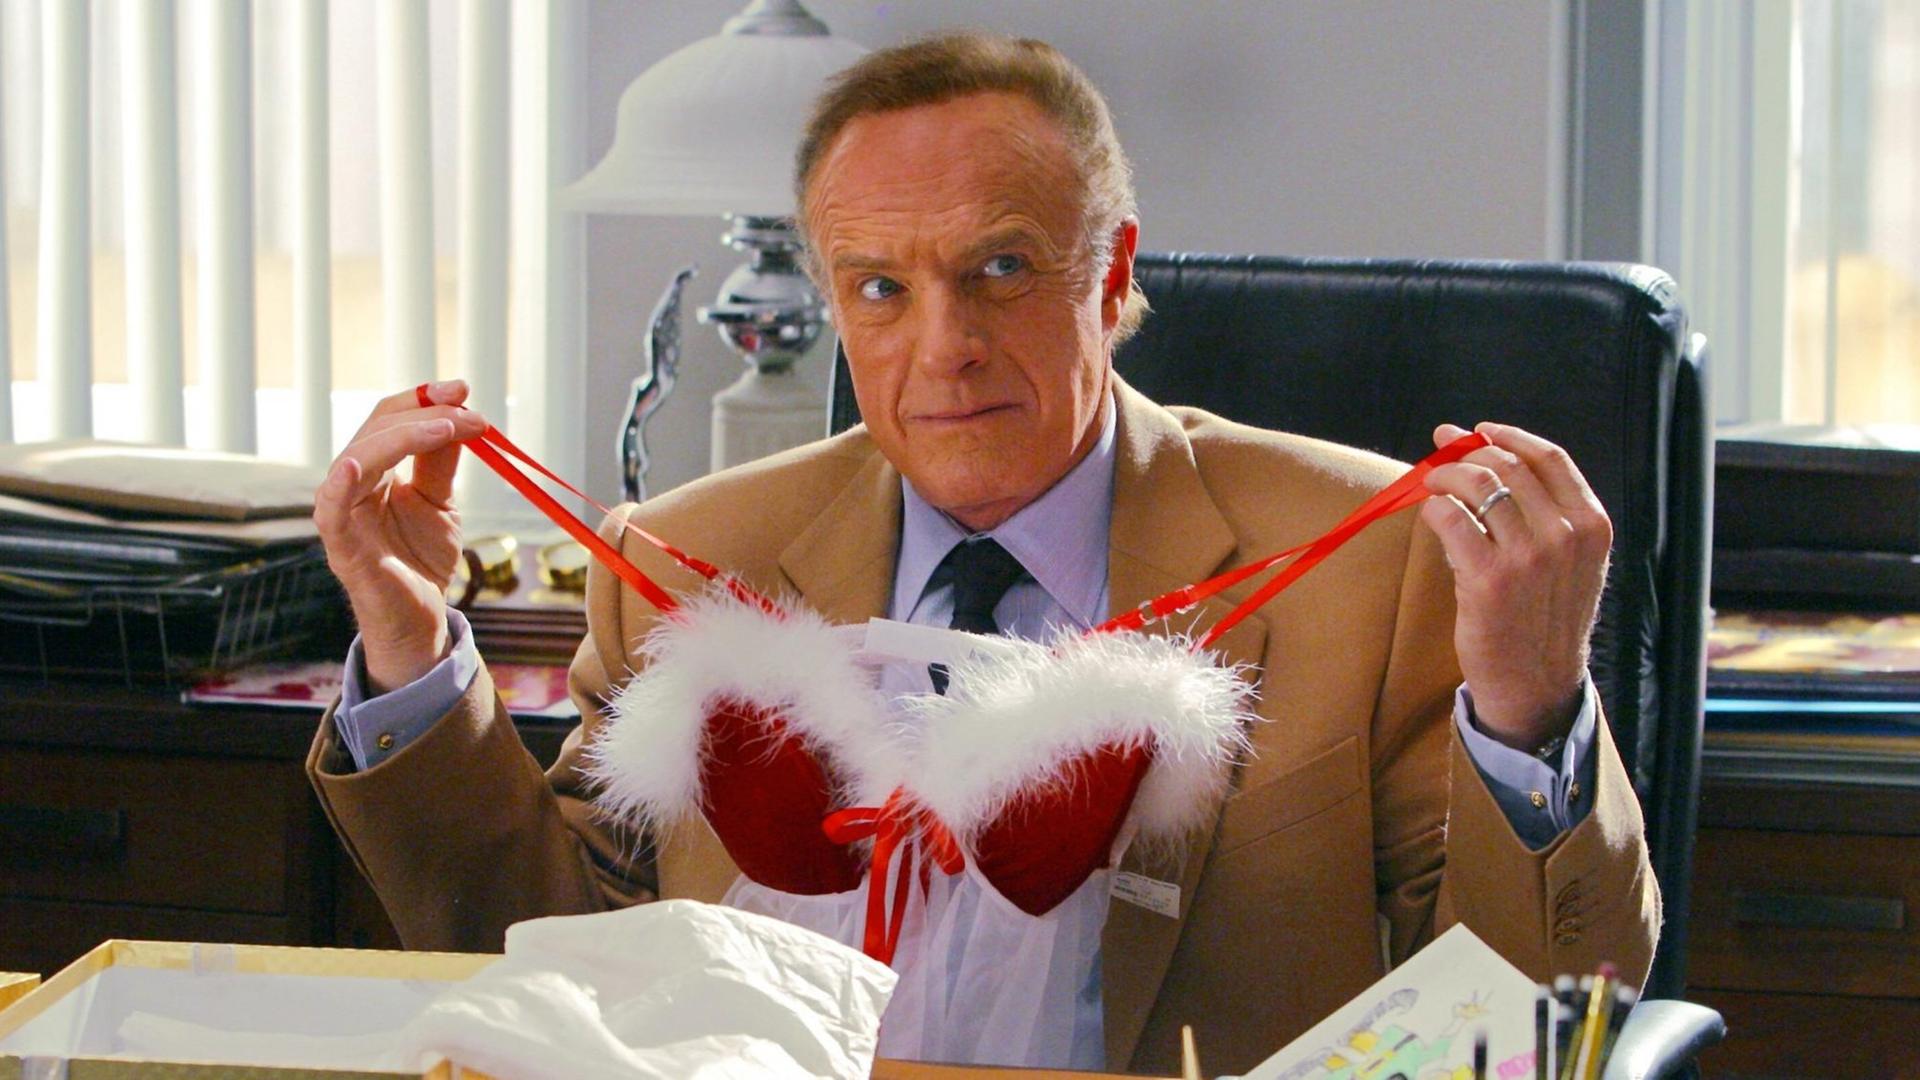 Der Verleger Walter (James Caan) hält in dem neuen Kinofilm "Buddy - Der Weihnachtself" ein Geschenk der besonderen Art in Händen (Szenenfoto).